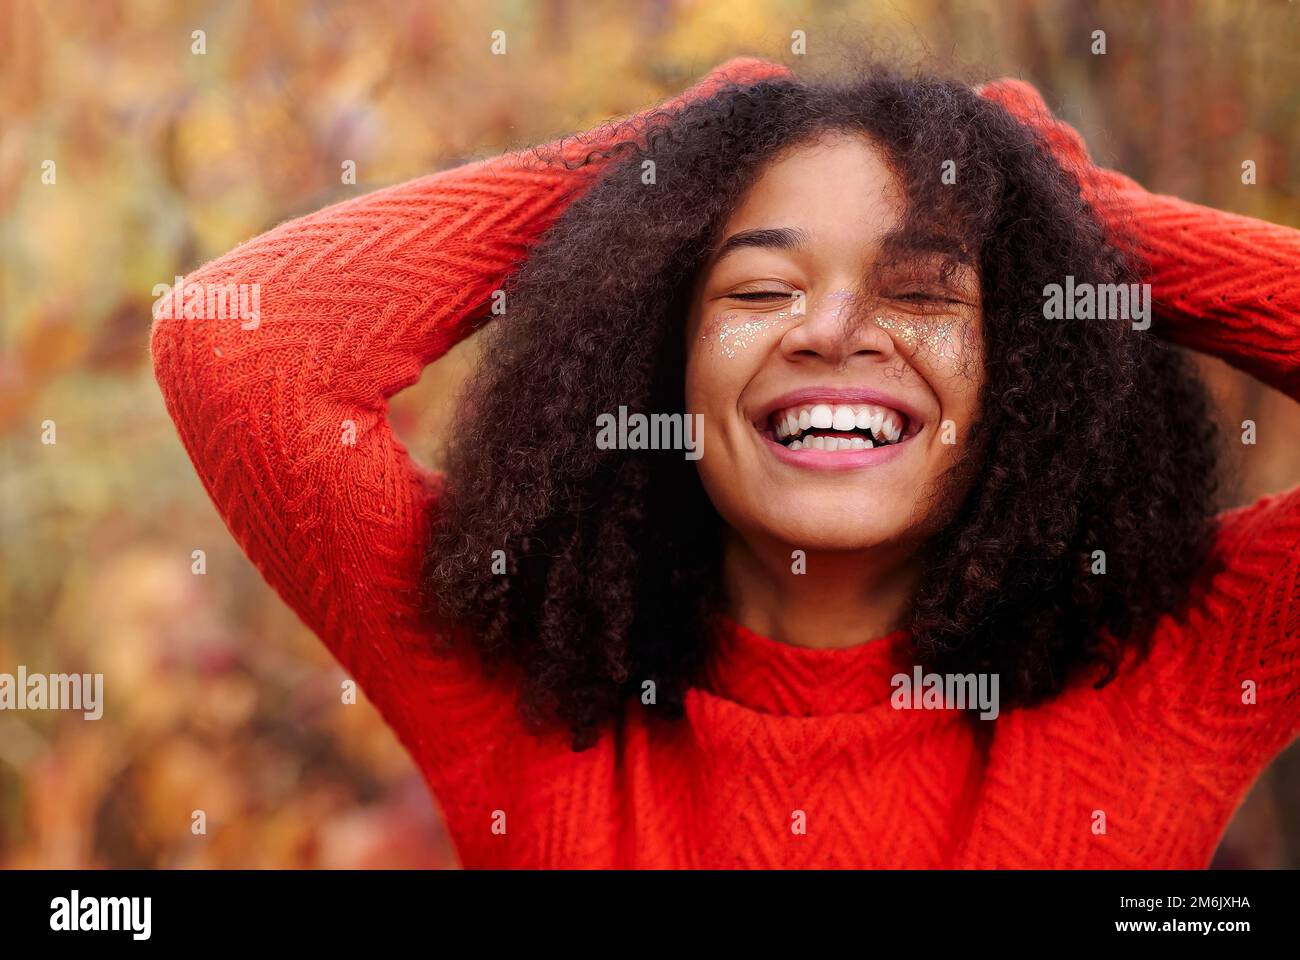 Junge, glückliche, lockige afroamerikanische Frau mit geschlossenen Augen und lachend im Herbstwald Stockfoto